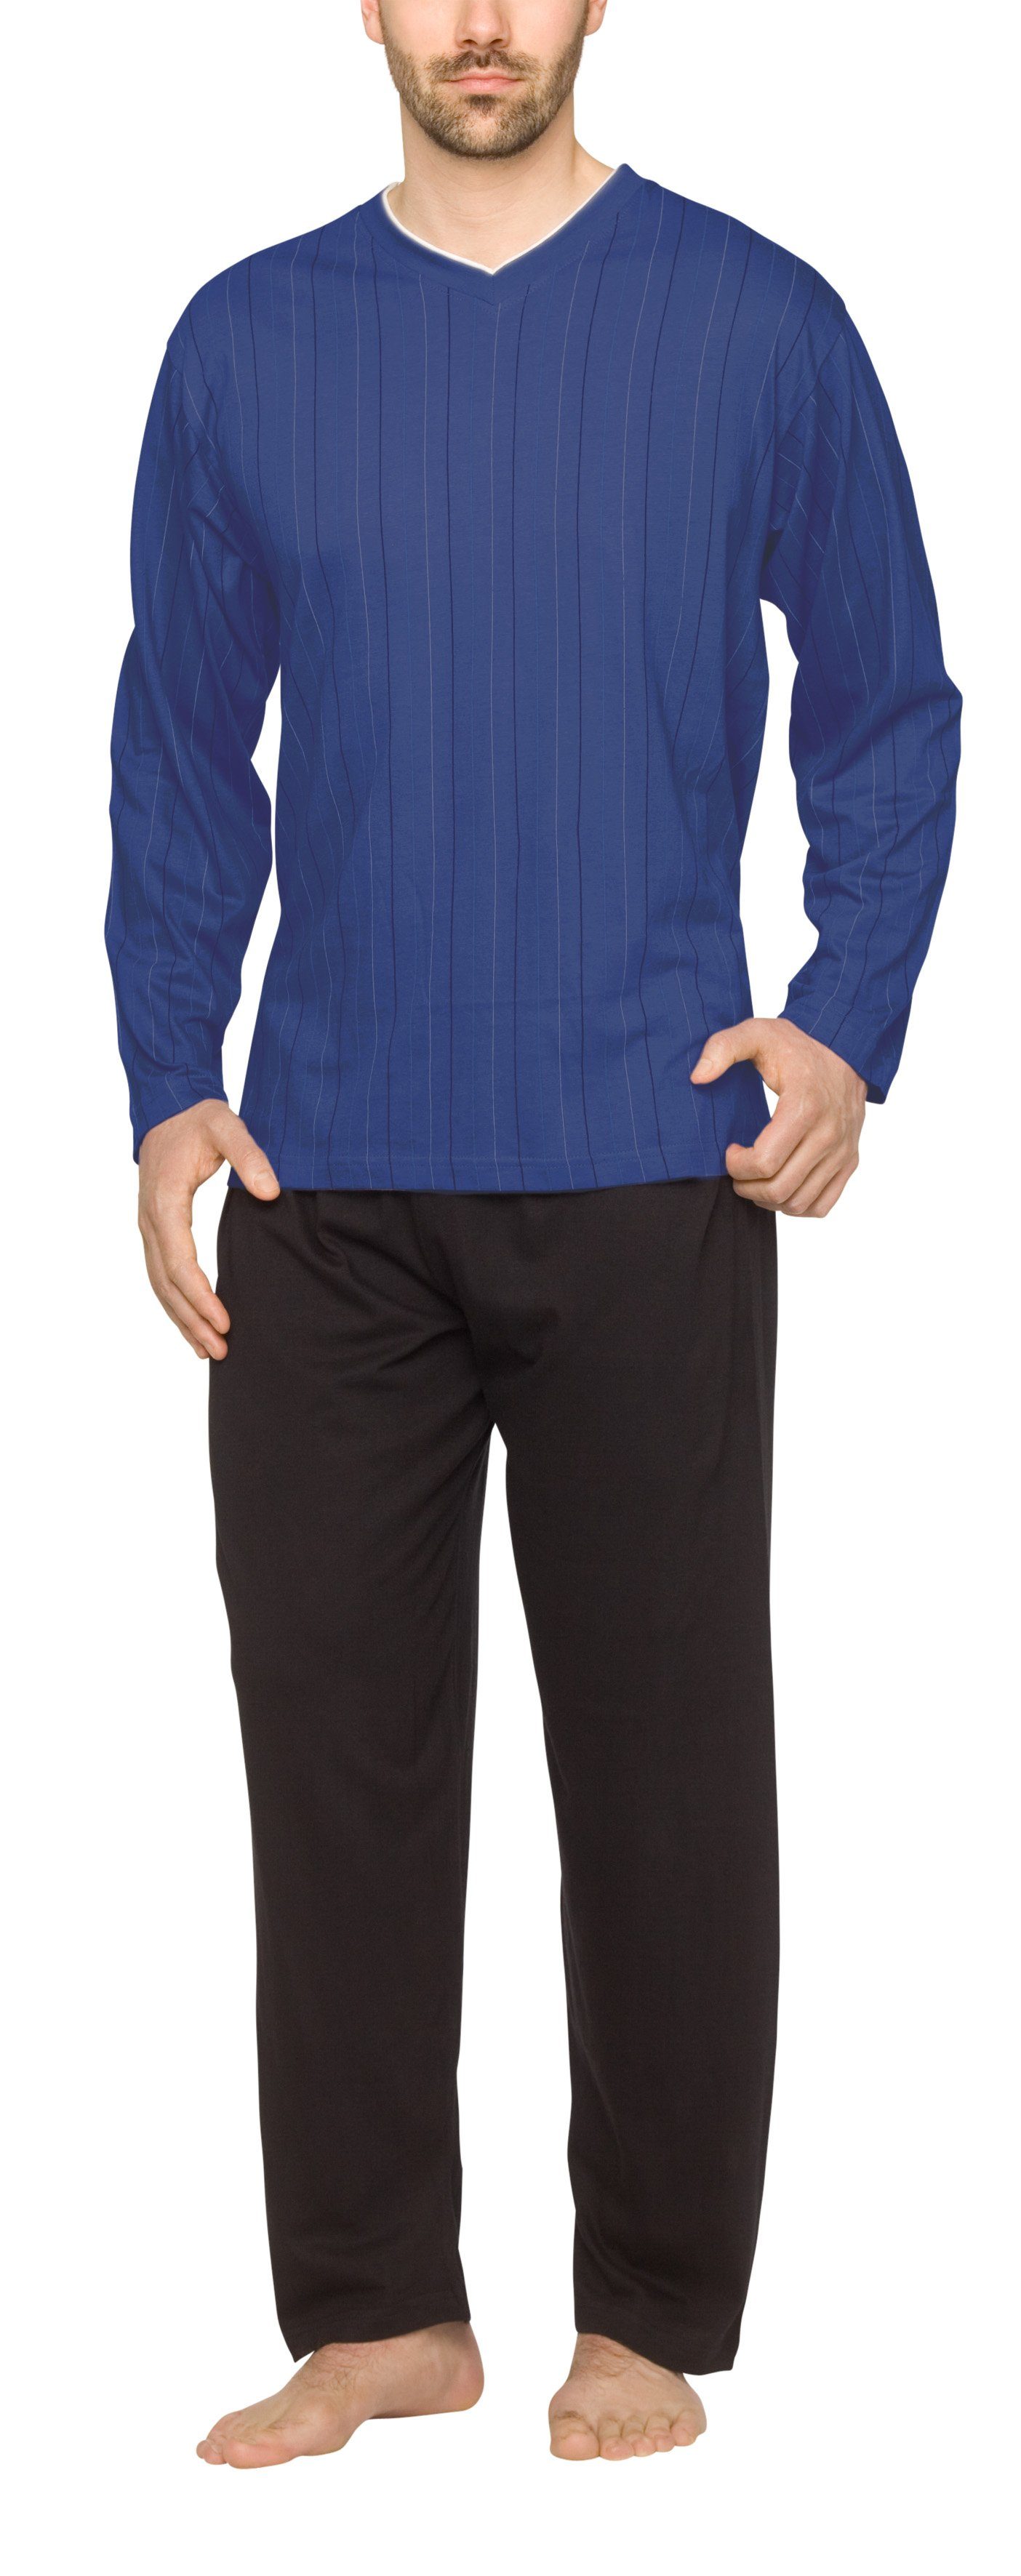 Moonline Pyjama Herren Schlafanzug lang aus 100% Baumwolle mit V-Ausschnitt und Streifen-Design Streifen-Druck auf blau | Pyjamas